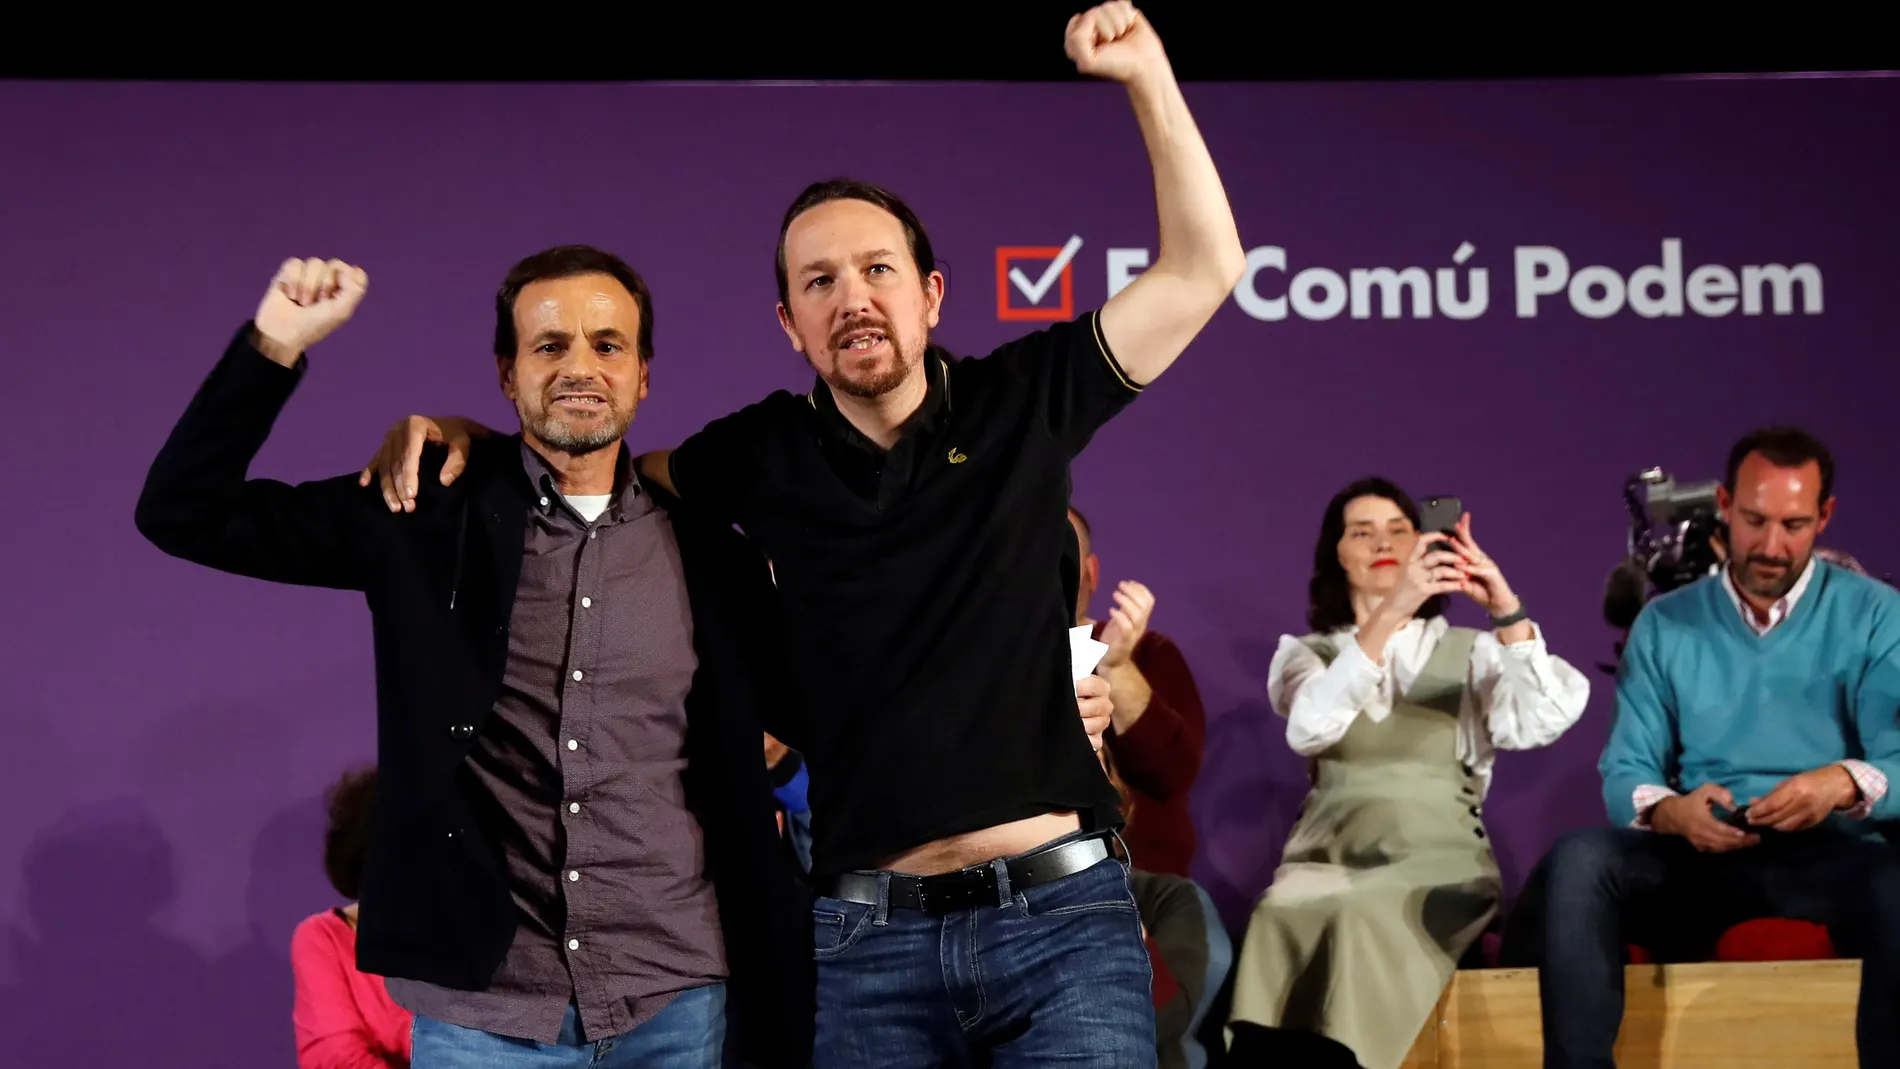 Mitin central de campaña de los comunes en Barcelona con Pablo Iglesias